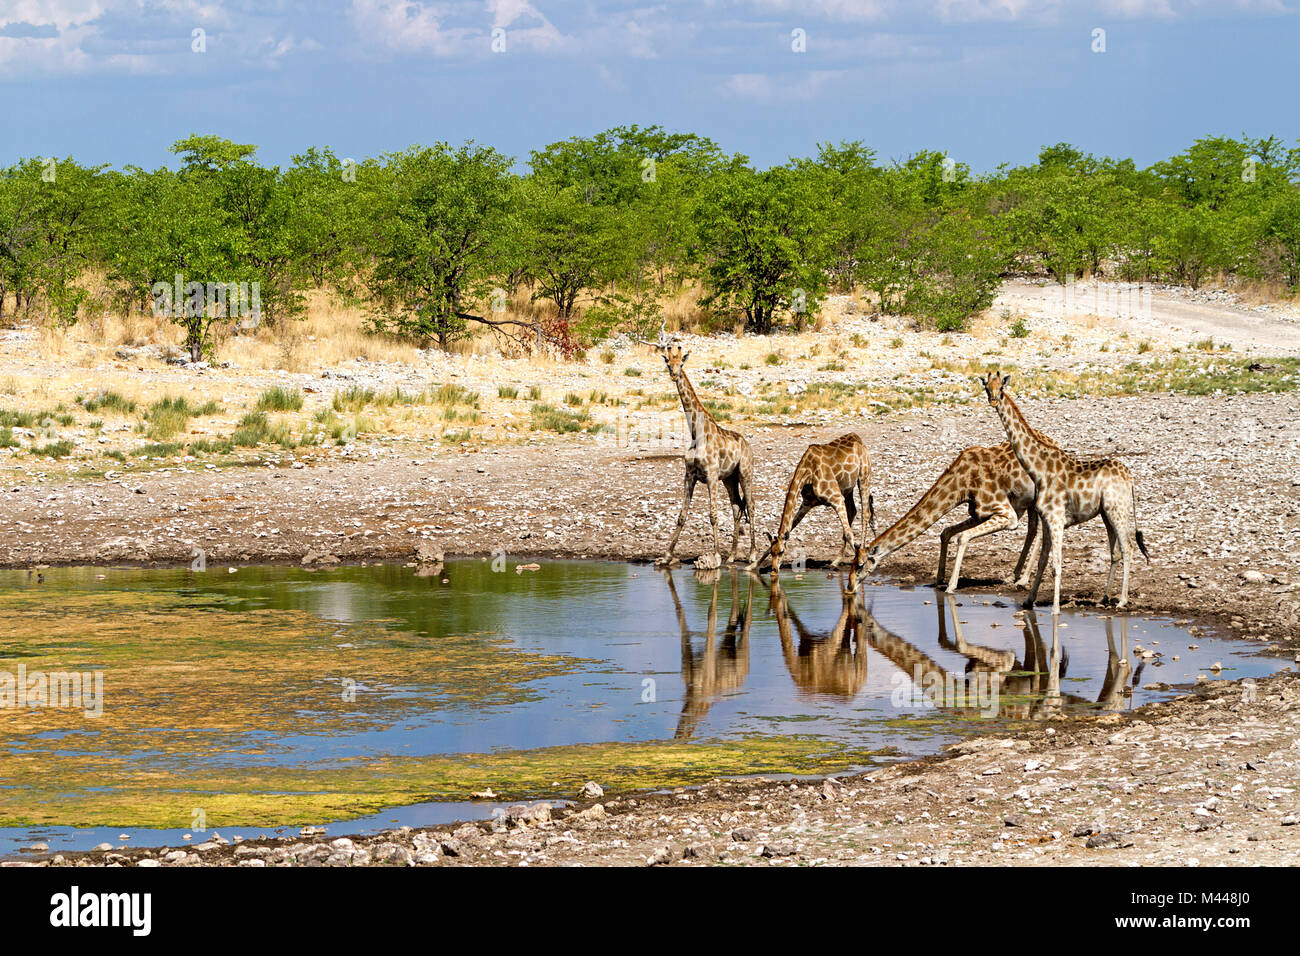 Etosha National Park - girafe à l'eau Banque D'Images